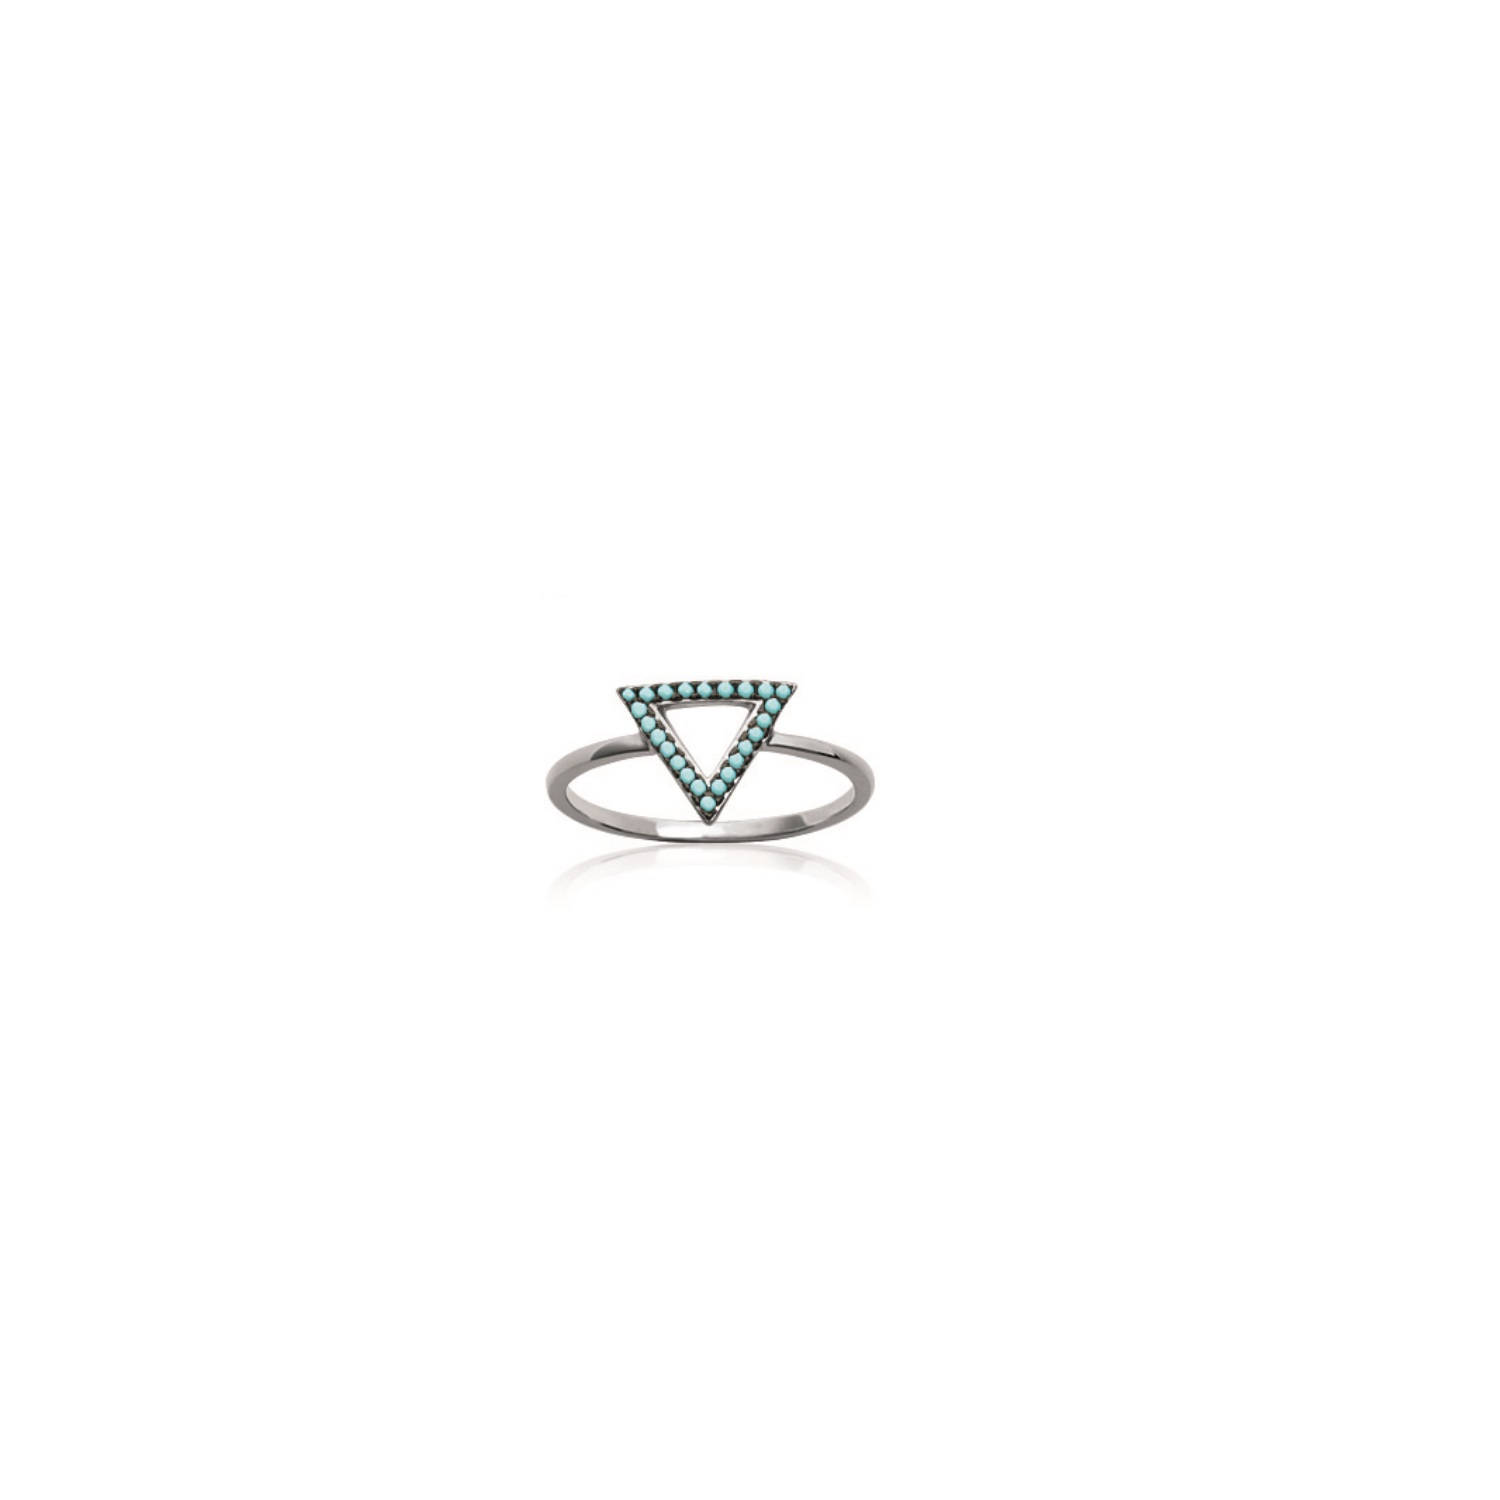 Bague triangle en argent 925/000 rhodié et pierre d'imitation turquoise. Triangle  Adulte Femme Indémodable Symboles 